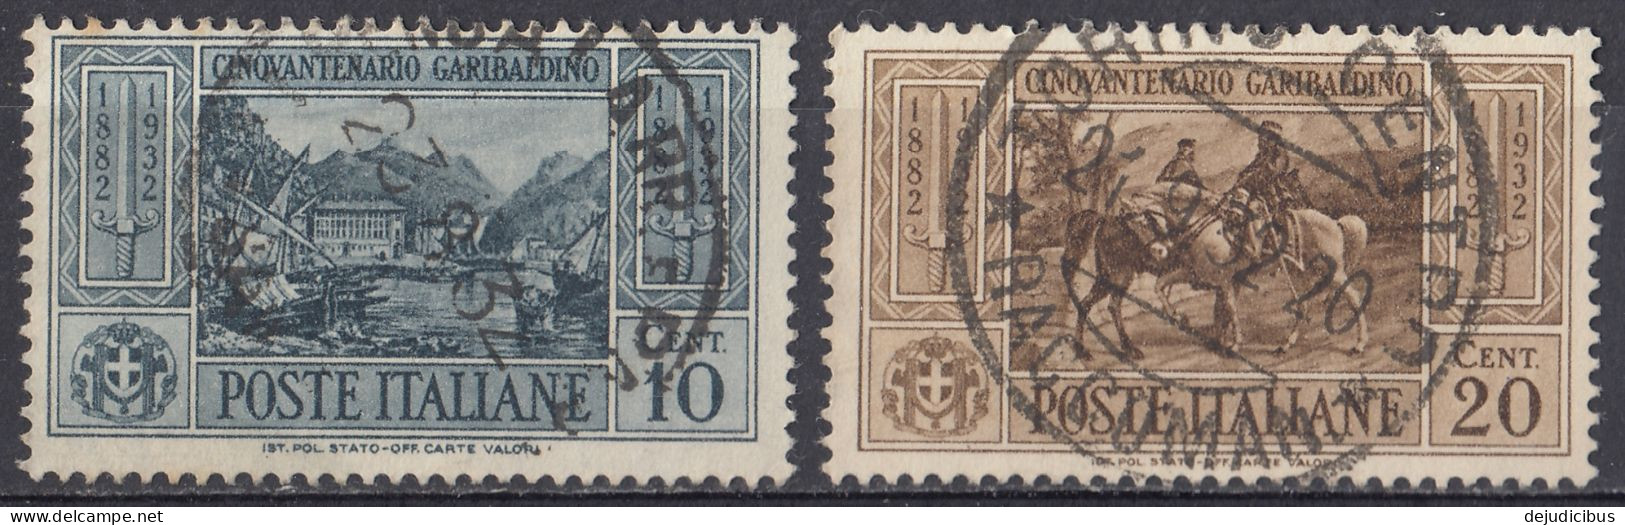 ITALIA - 1932 - Lotto Di 2 Valori Usati:  Yvert 295 E 296. - Paketmarken